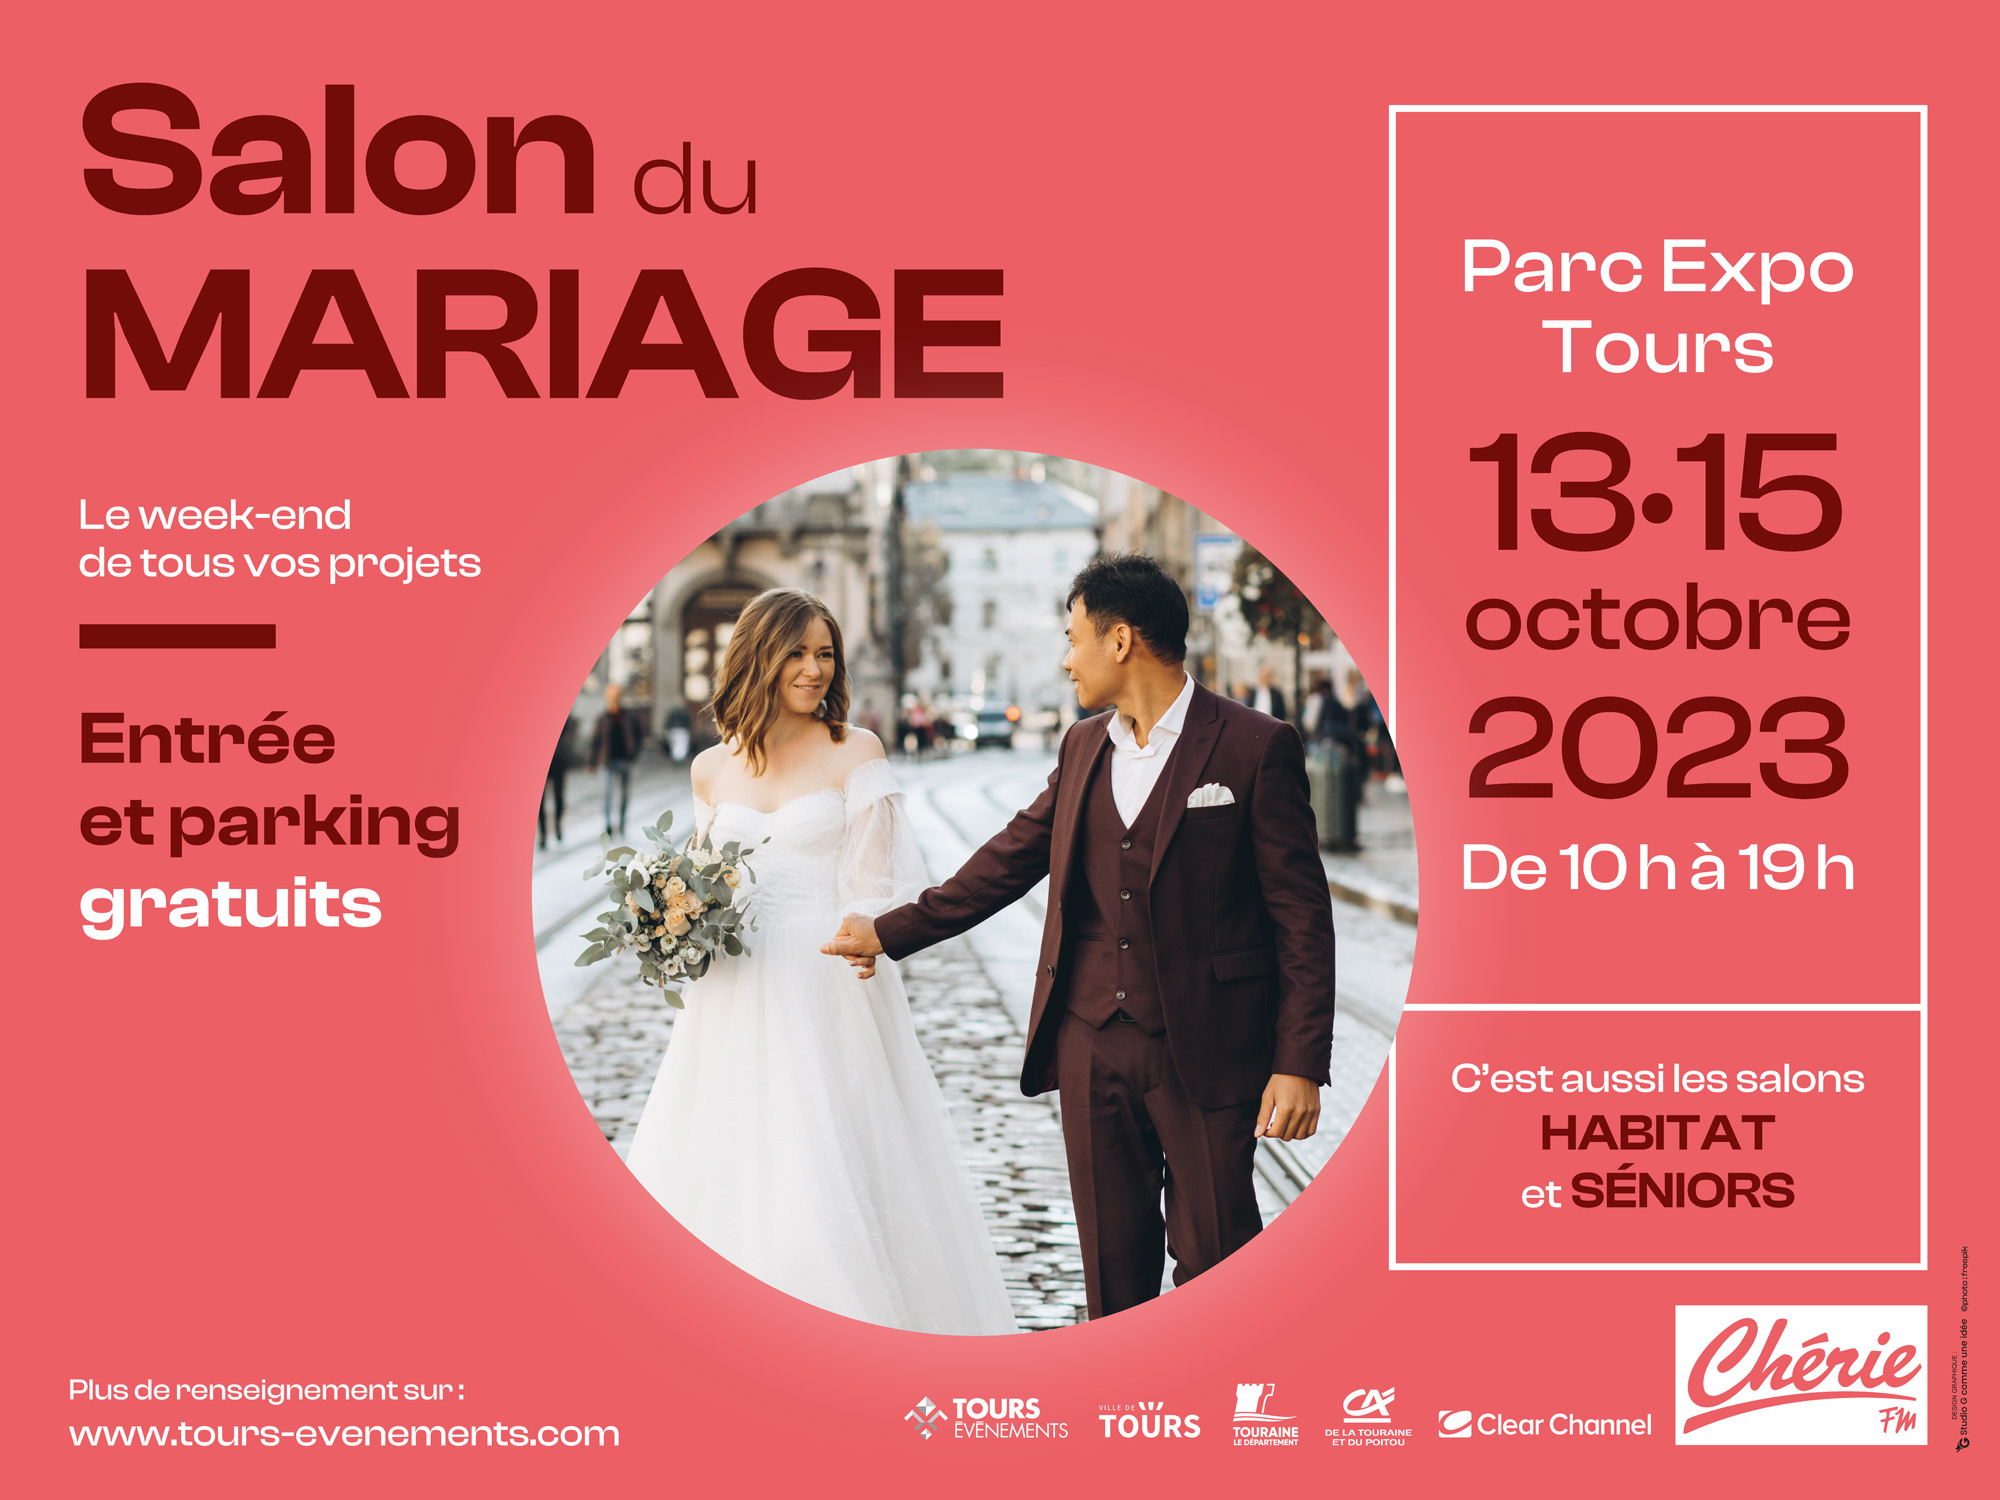 Le salon du mariage au Parc Expo du 14 au 16 octobre 2022.